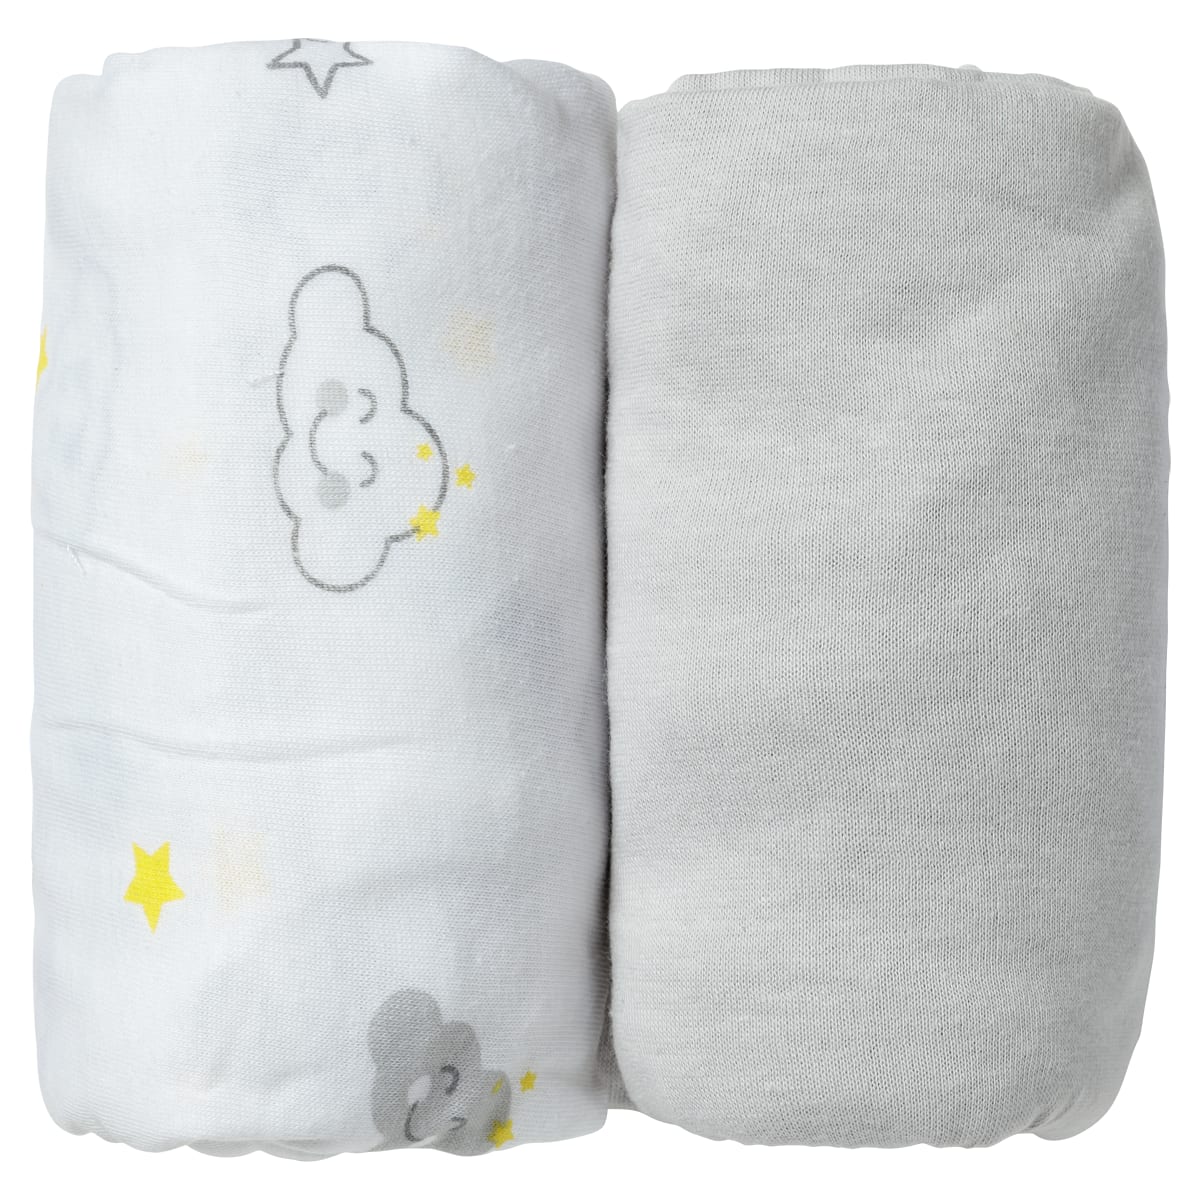 lot de 2 draps housse bébé en coton gris et blanc 70x140 cm